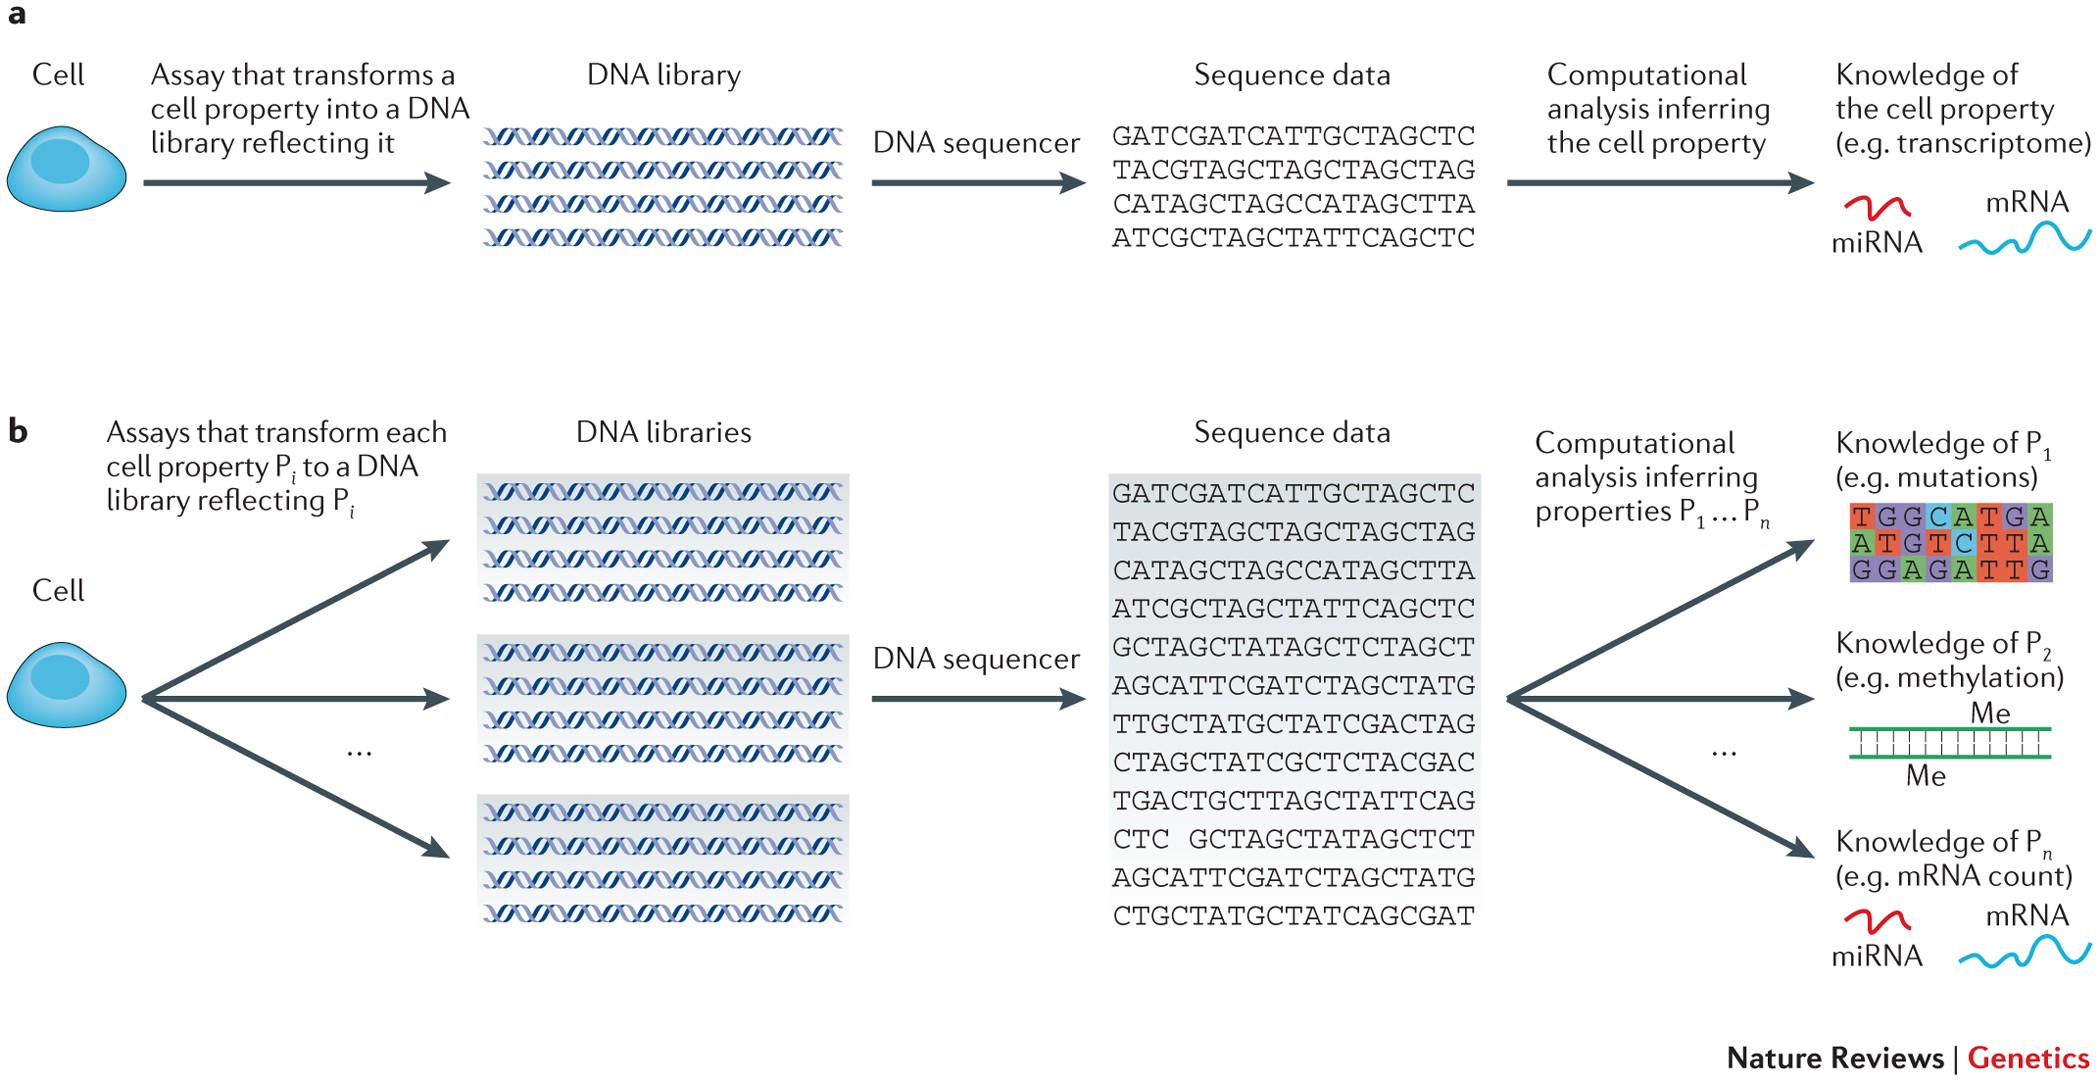 Transform each. DNA Library. DNA sequencing. Next Generation sequencing. Listing/sequencing таблица.